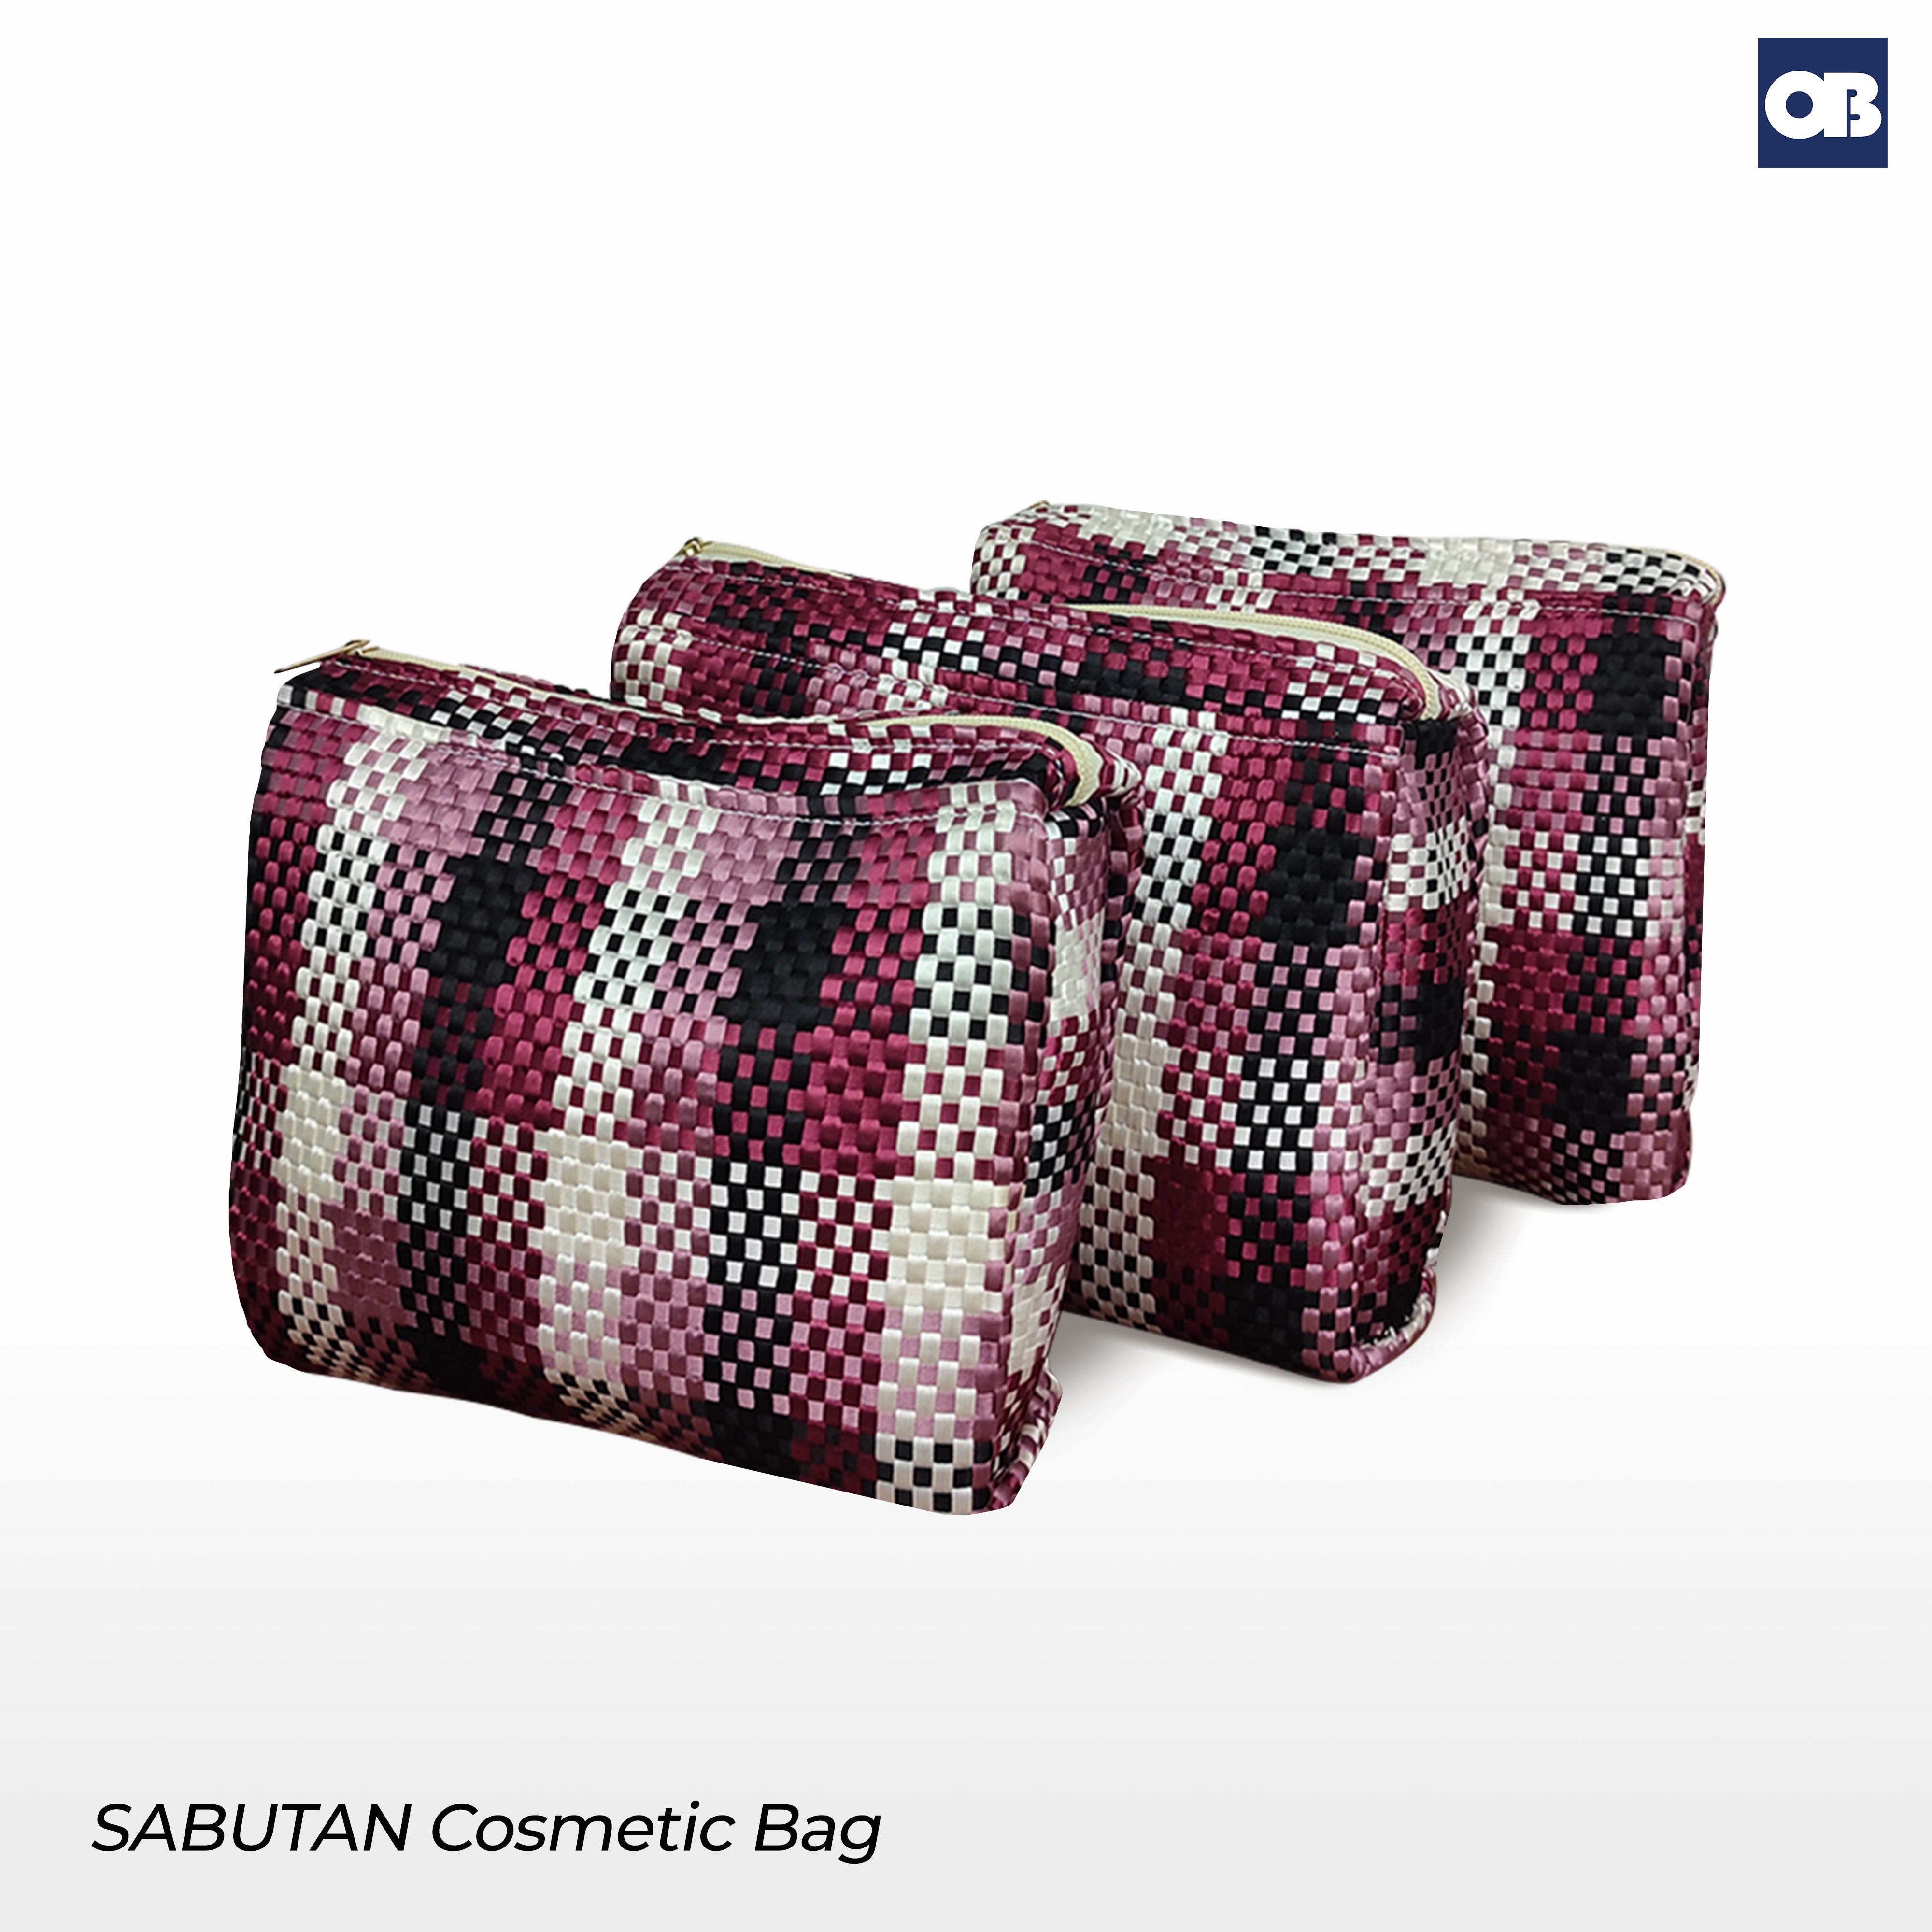 OB Sabutan Cosmetic bag